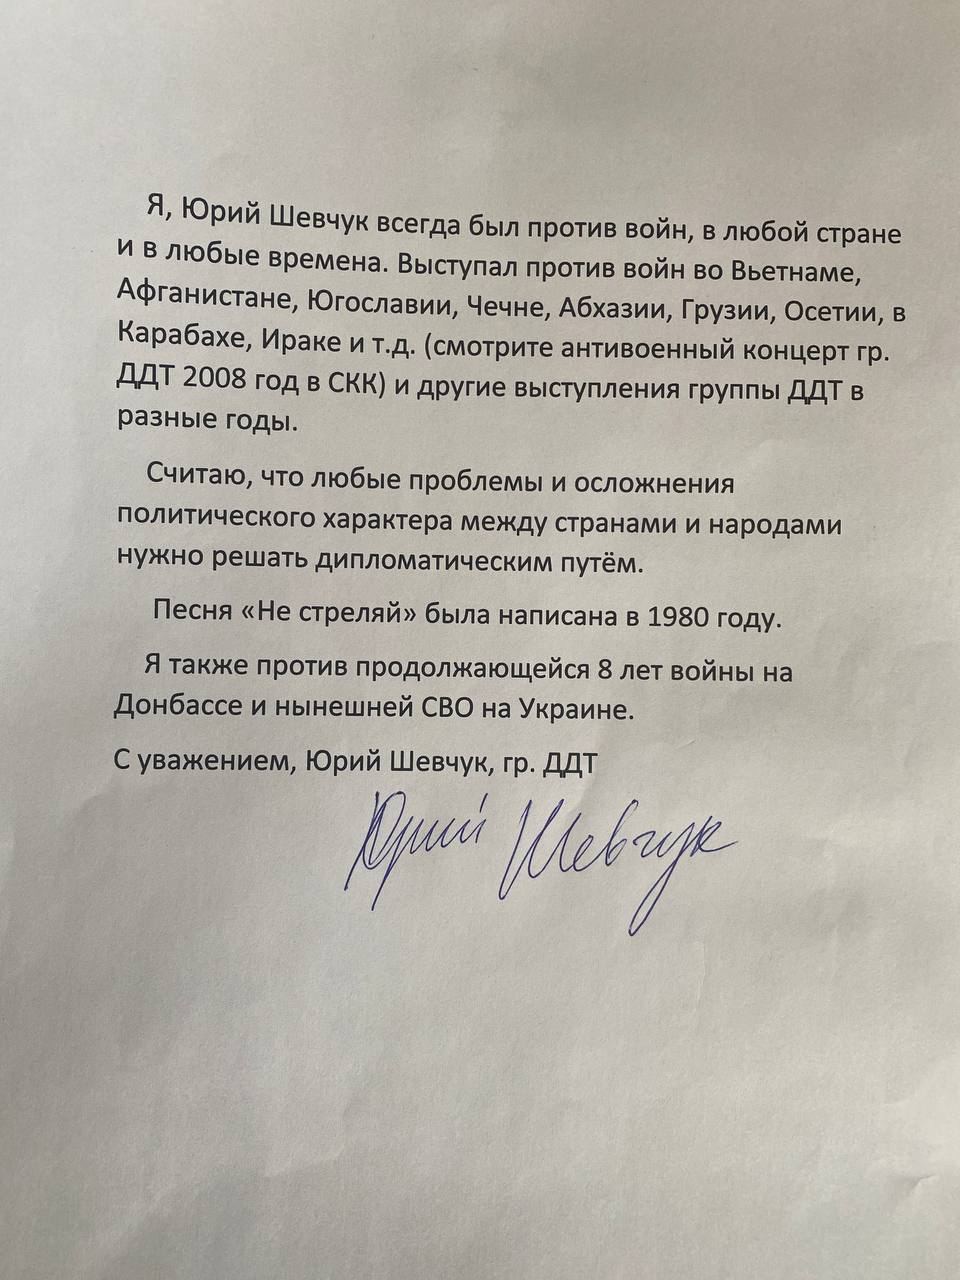 Суд признал, что Родина — это жопа президента - Суд оштрафовал лидера группы ДД по статье о "дискредитации" армии РФ